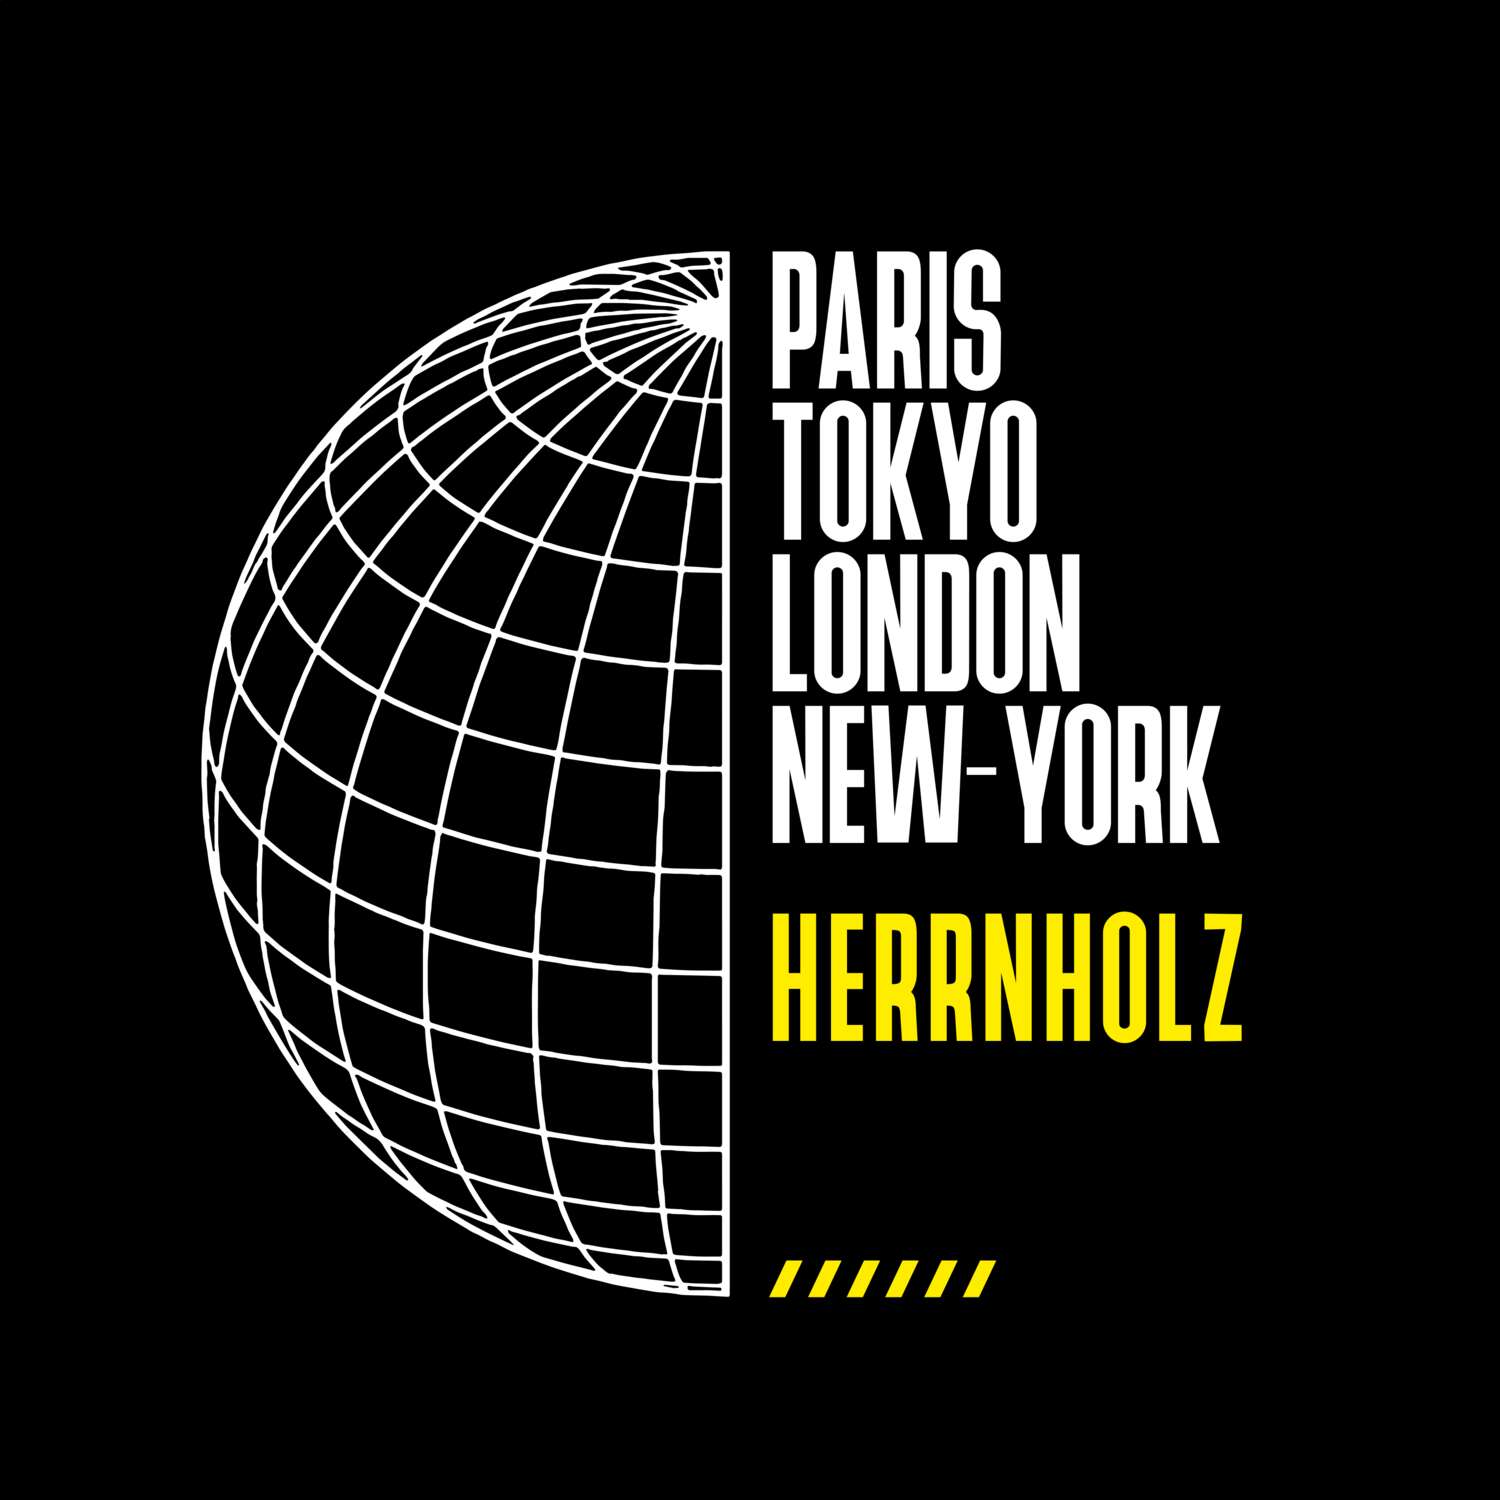 Herrnholz T-Shirt »Paris Tokyo London«